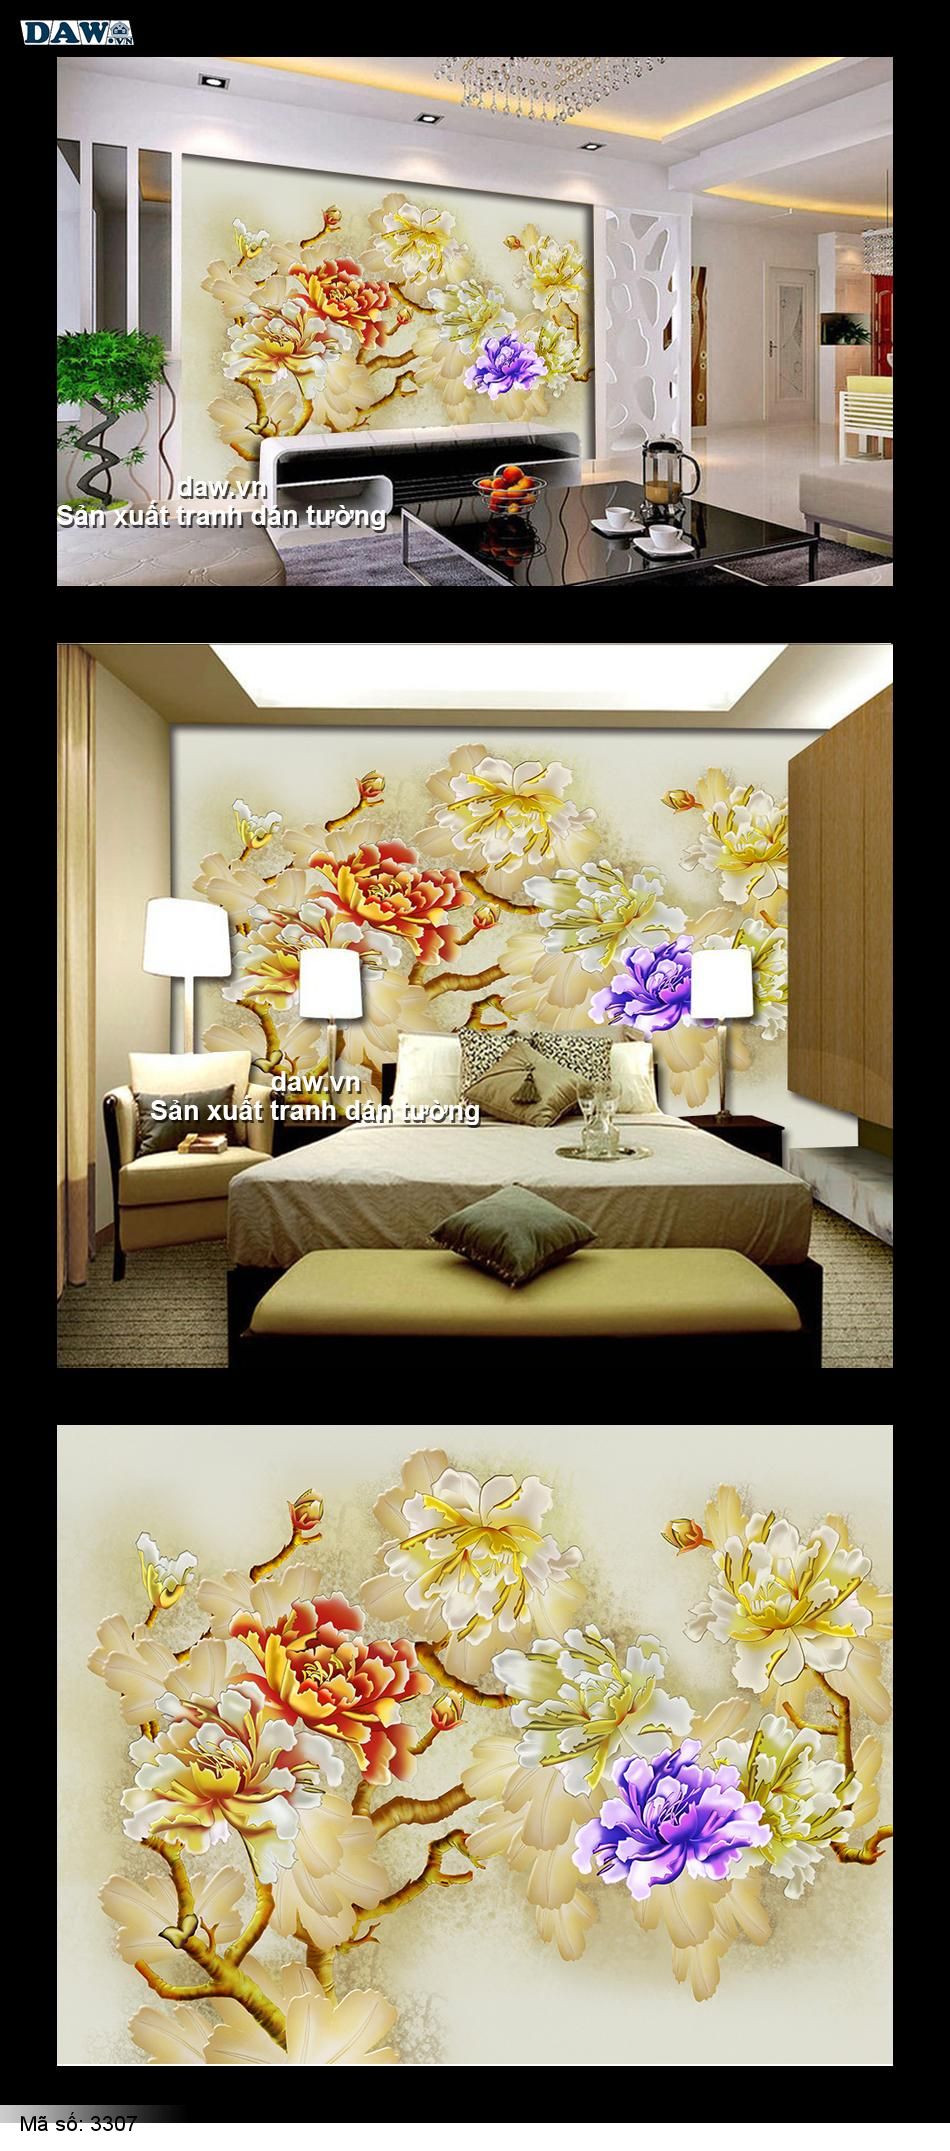 Tranh dán tường hoa lá là một sự lựa chọn tuyệt vời cho những ai yêu thích thiết kế nội thất trang nhã và tinh tế. Với chi tiết hoa văn tinh xảo và màu sắc tươi sáng, tranh dán tường hoa lá sẽ giúp cho phòng của bạn trở nên sang trọng hơn bao giờ hết. Khám phá ngay hình ảnh đầy sức hút của tranh dán tường này.